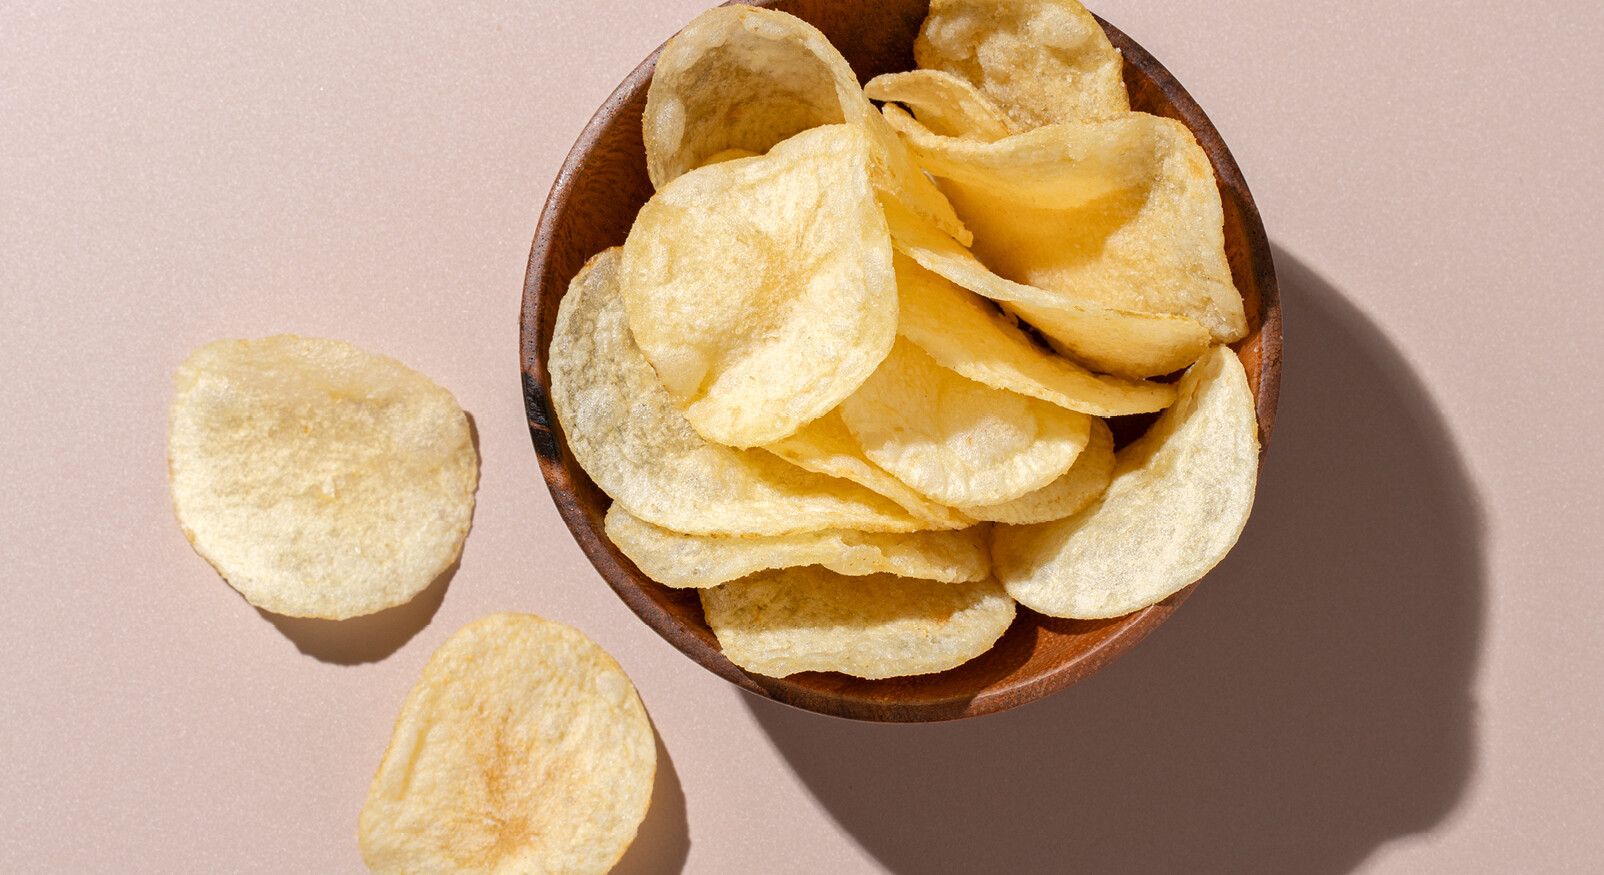 naturel chips